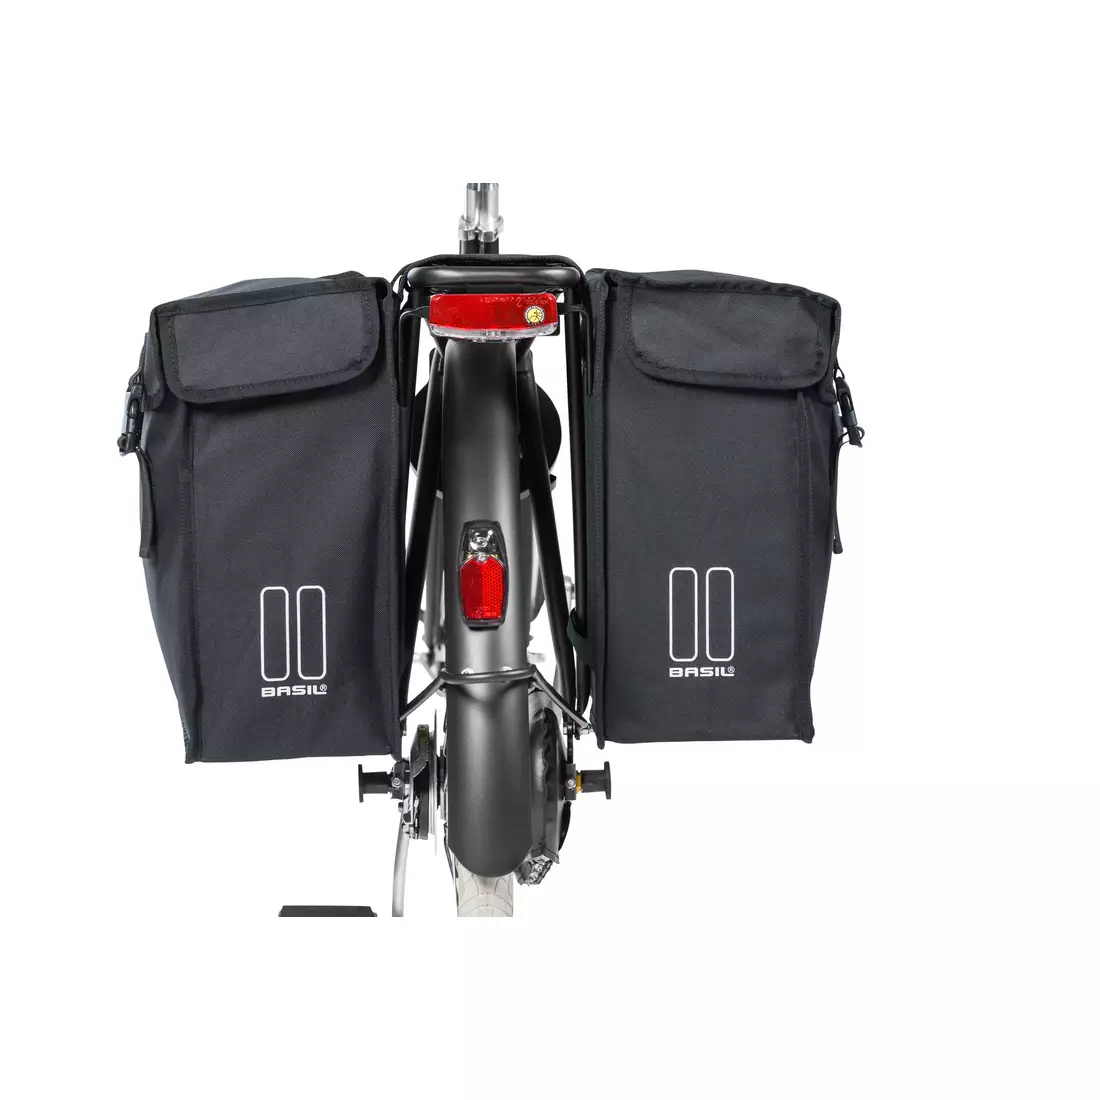 Dupla városi kerékpár táska BASIL MARA XXL 47L, pánttal rögzítés, vízálló poliészter, fekete BAS-17395